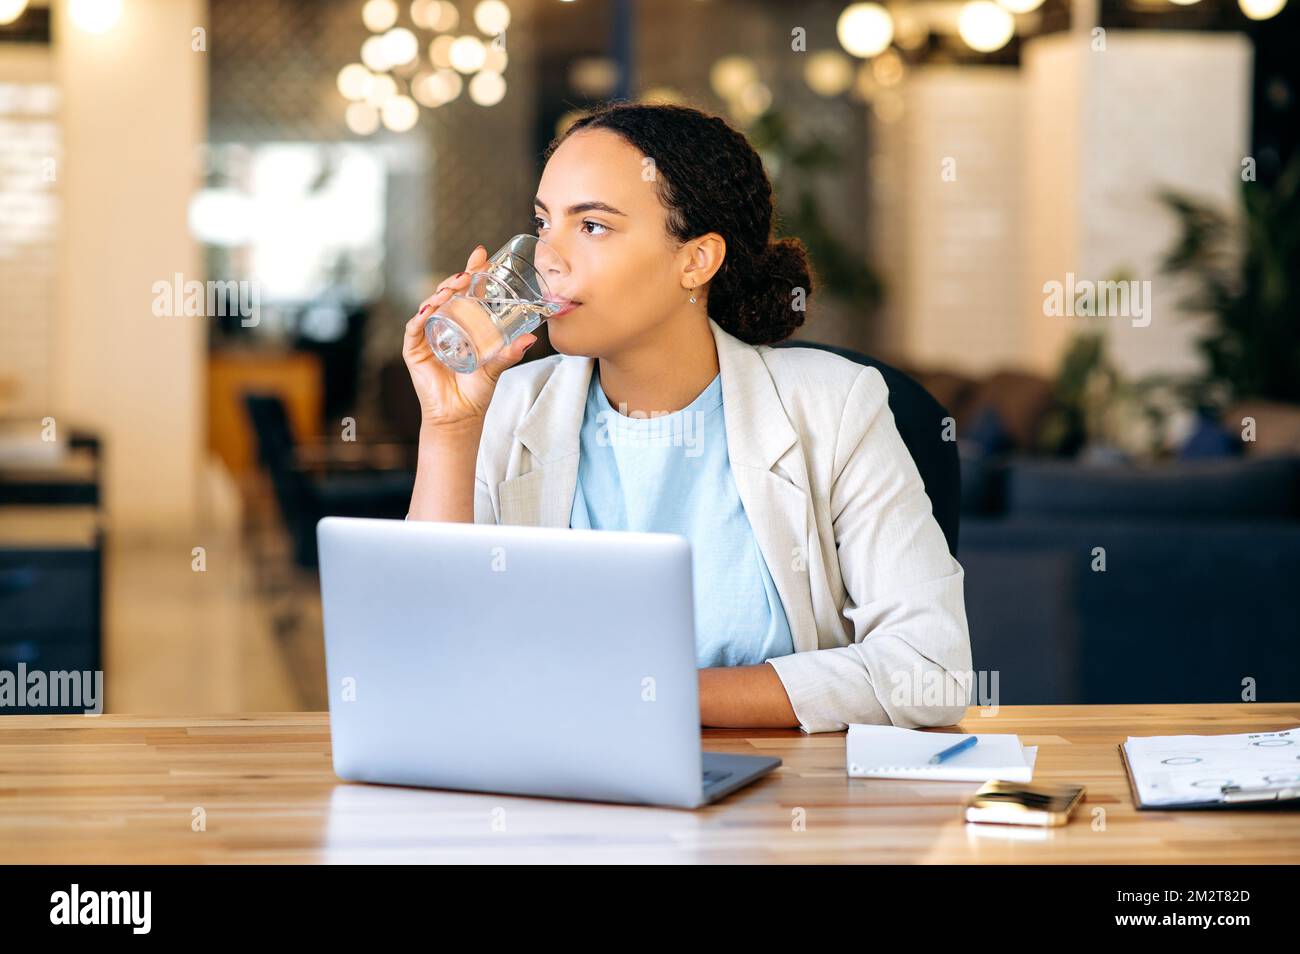 Gesunde brasilianische oder hispanische Geschäftsfrau, sitzt an einem Arbeitsplatz im Büro, trinkt ein Glas frisches sauberes Wasser, hält das Gleichgewicht des täglichen Wassers. Gesundheitsfürsorge, tägliche Wasseraufnahme im Körper Stockfoto